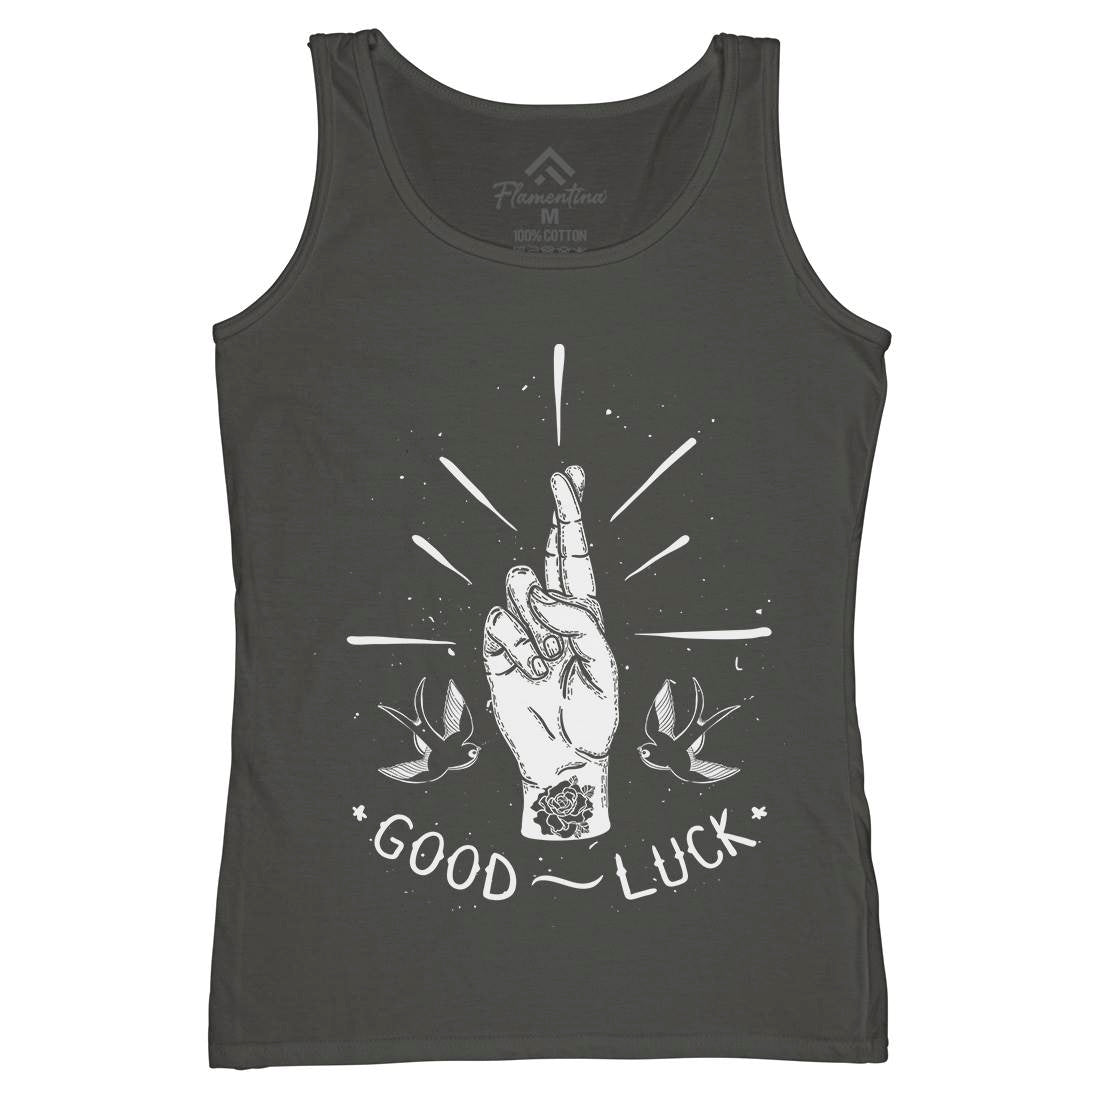 Good Luck Womens Organic Tank Top Vest Tattoo D461